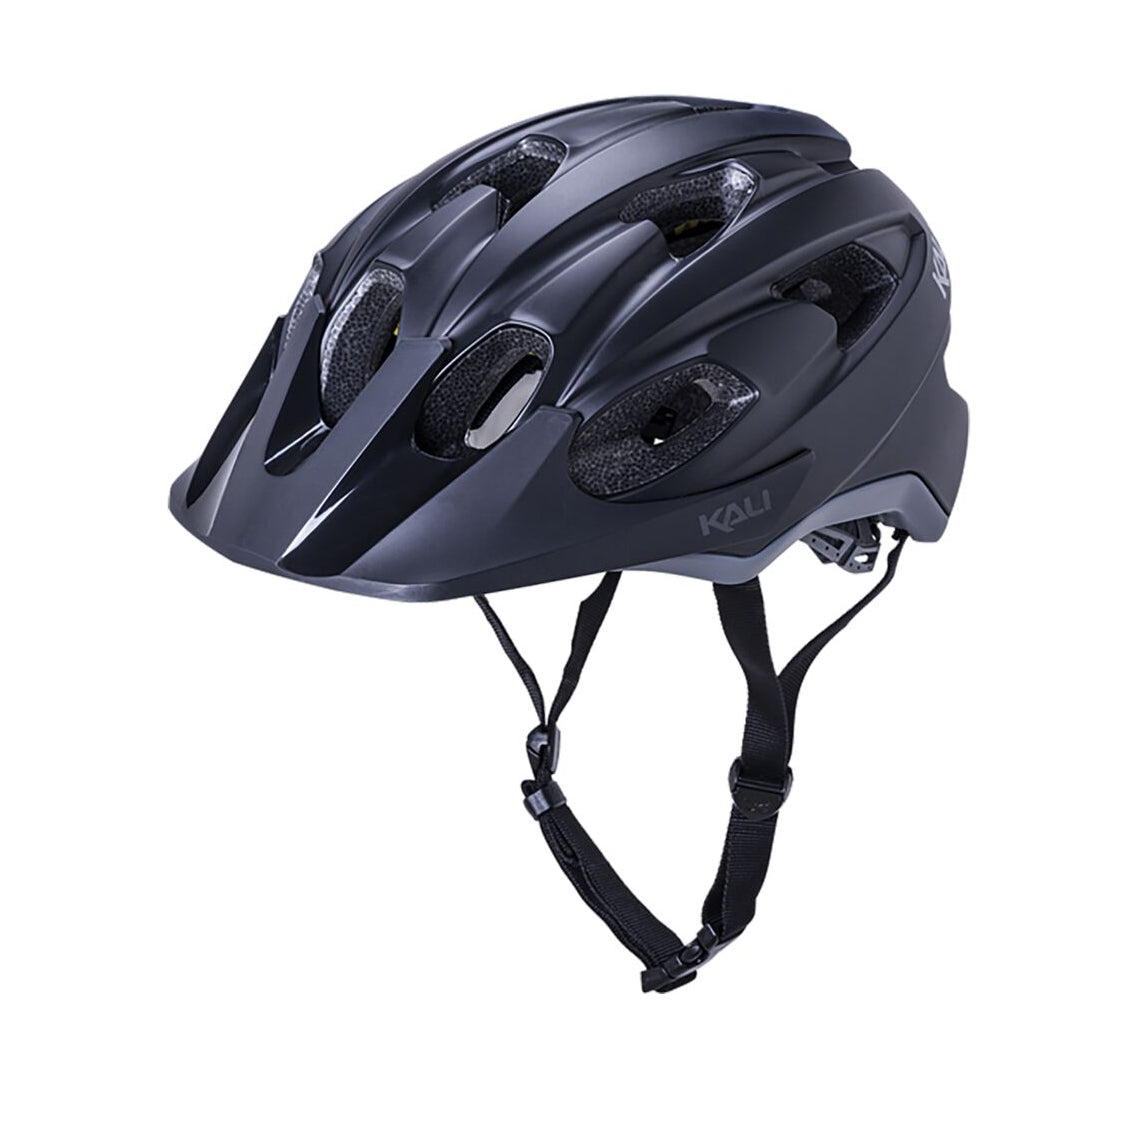 Kali Pace Trail Helmet Large/X-Large Black/Gray